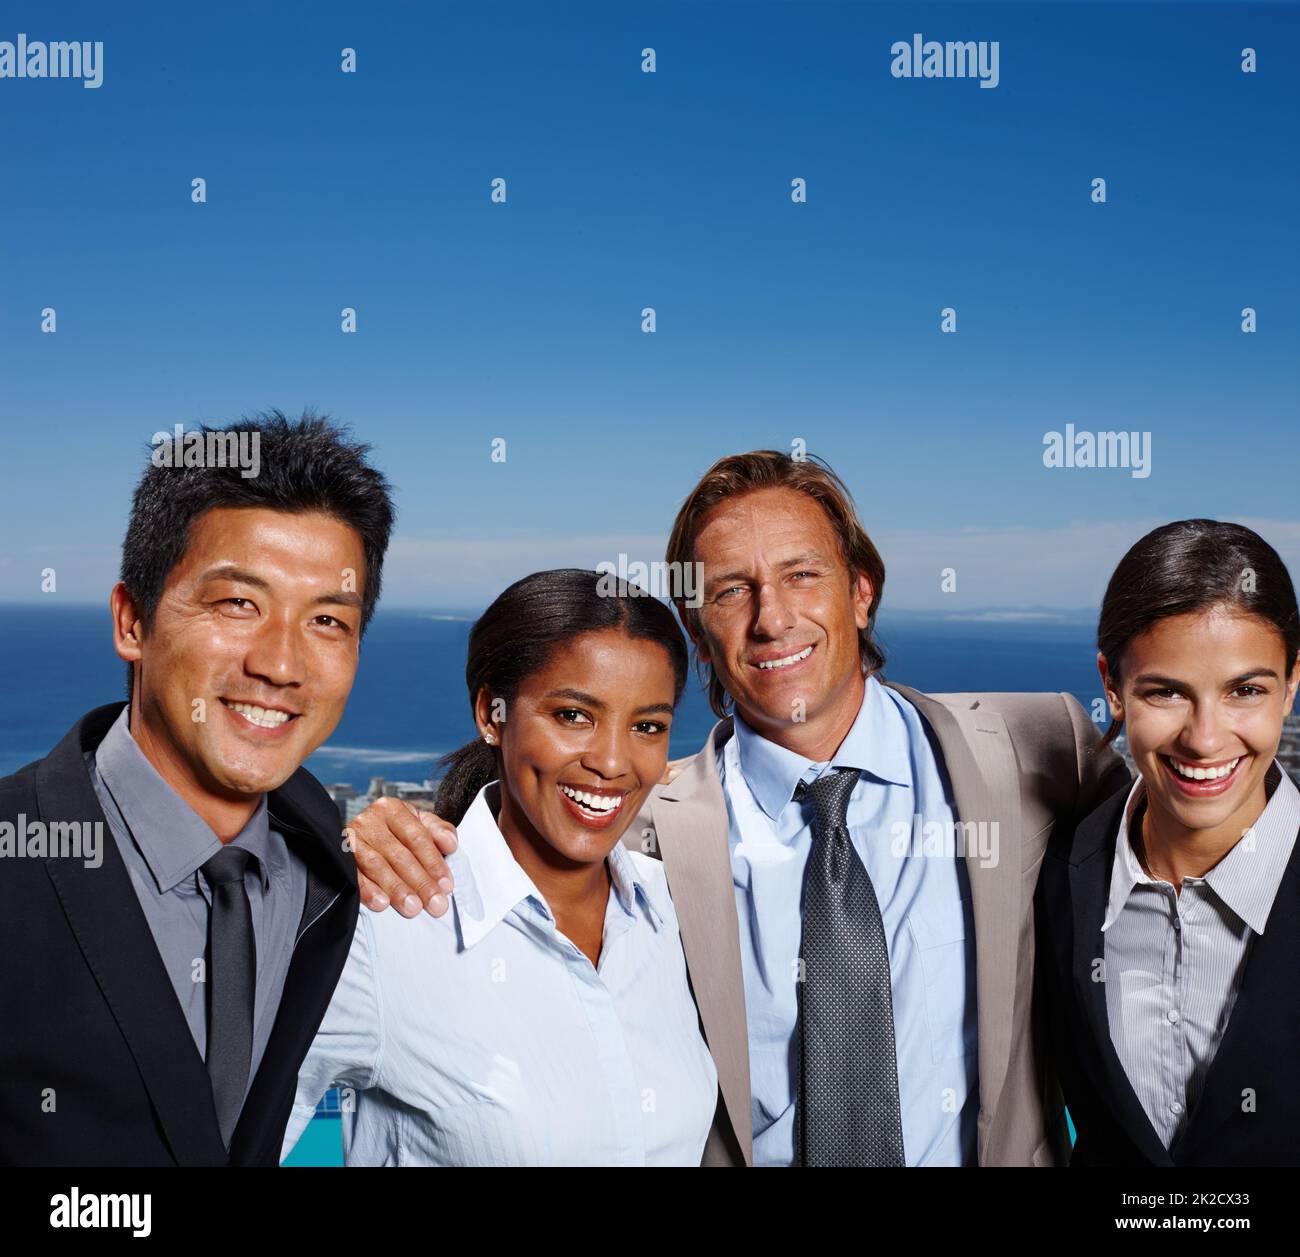 Sentirsi come theyre in cima al mondo. Scatto di quattro uomini d'affari che sorridono al sole con l'oceano dietro di loro. Foto Stock